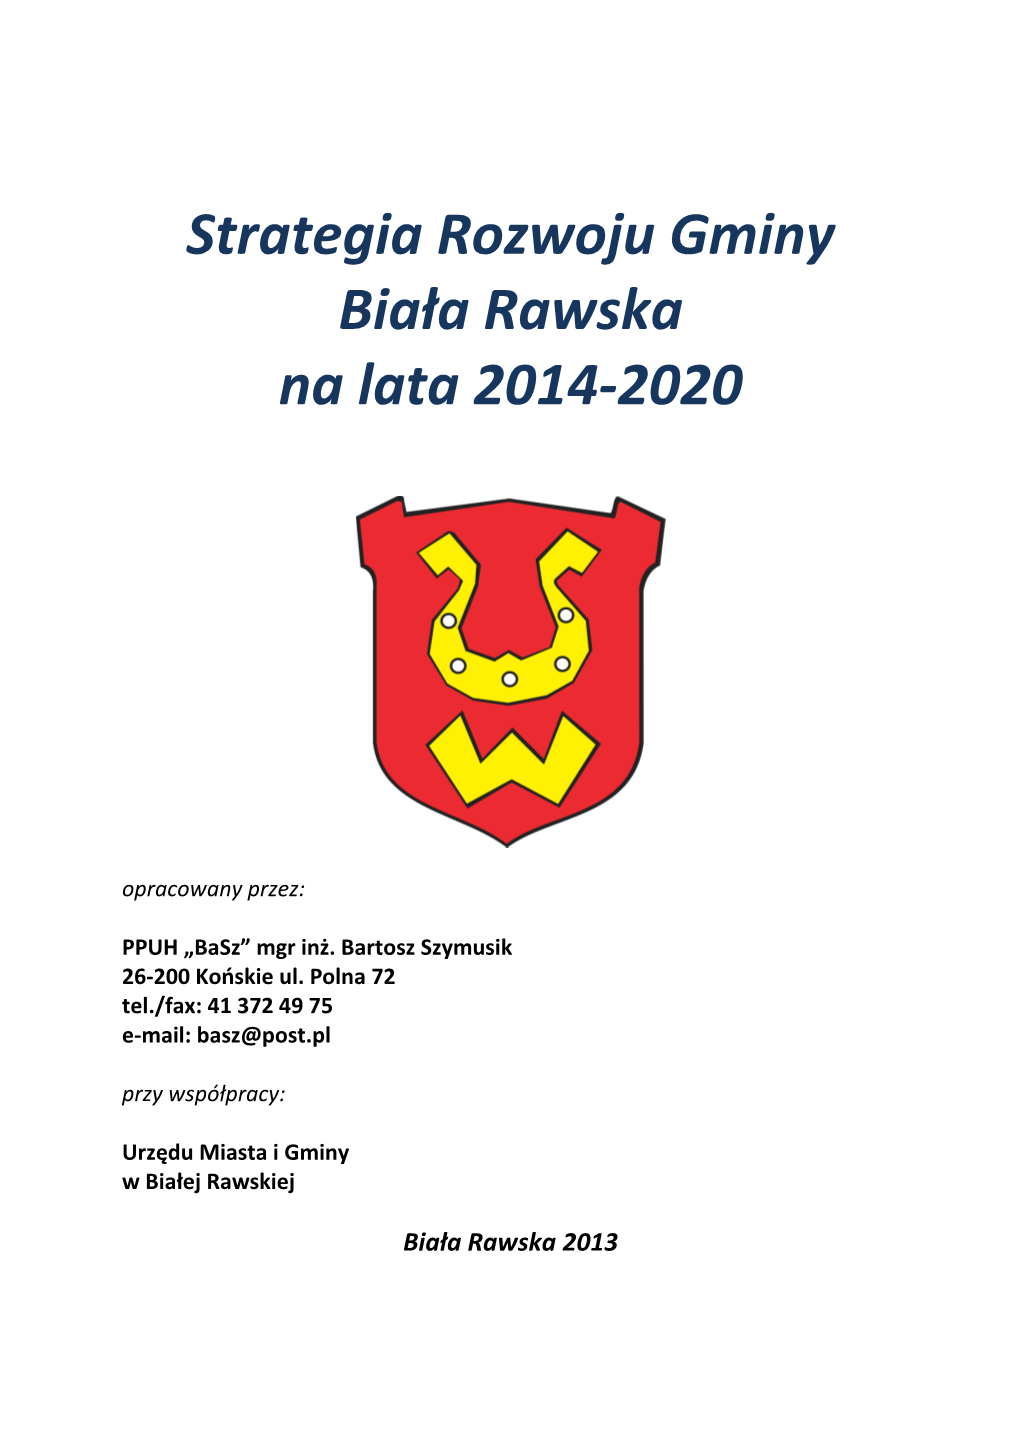 Strategia Rozwoju Gminy Biała Rawska Na Lata 2014-2020